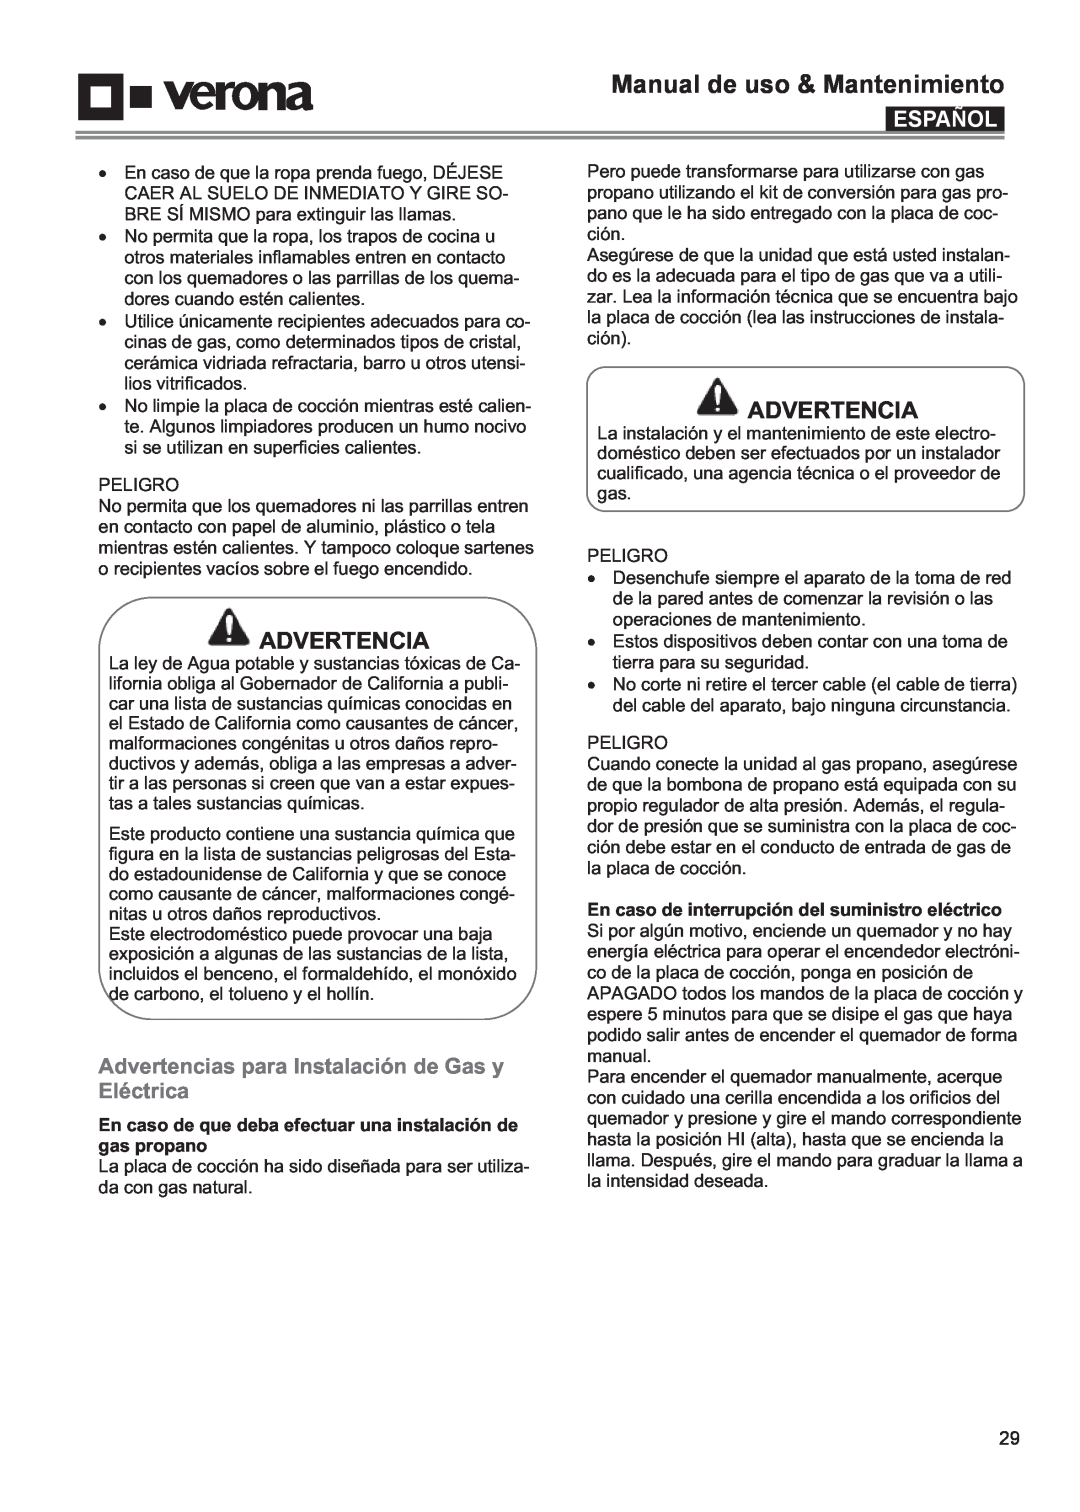 Verona VECTGV304SS, VECTGV365SS Advertencias para Instalación de Gas y Eléctrica, Manual de uso & Mantenimiento, Español 